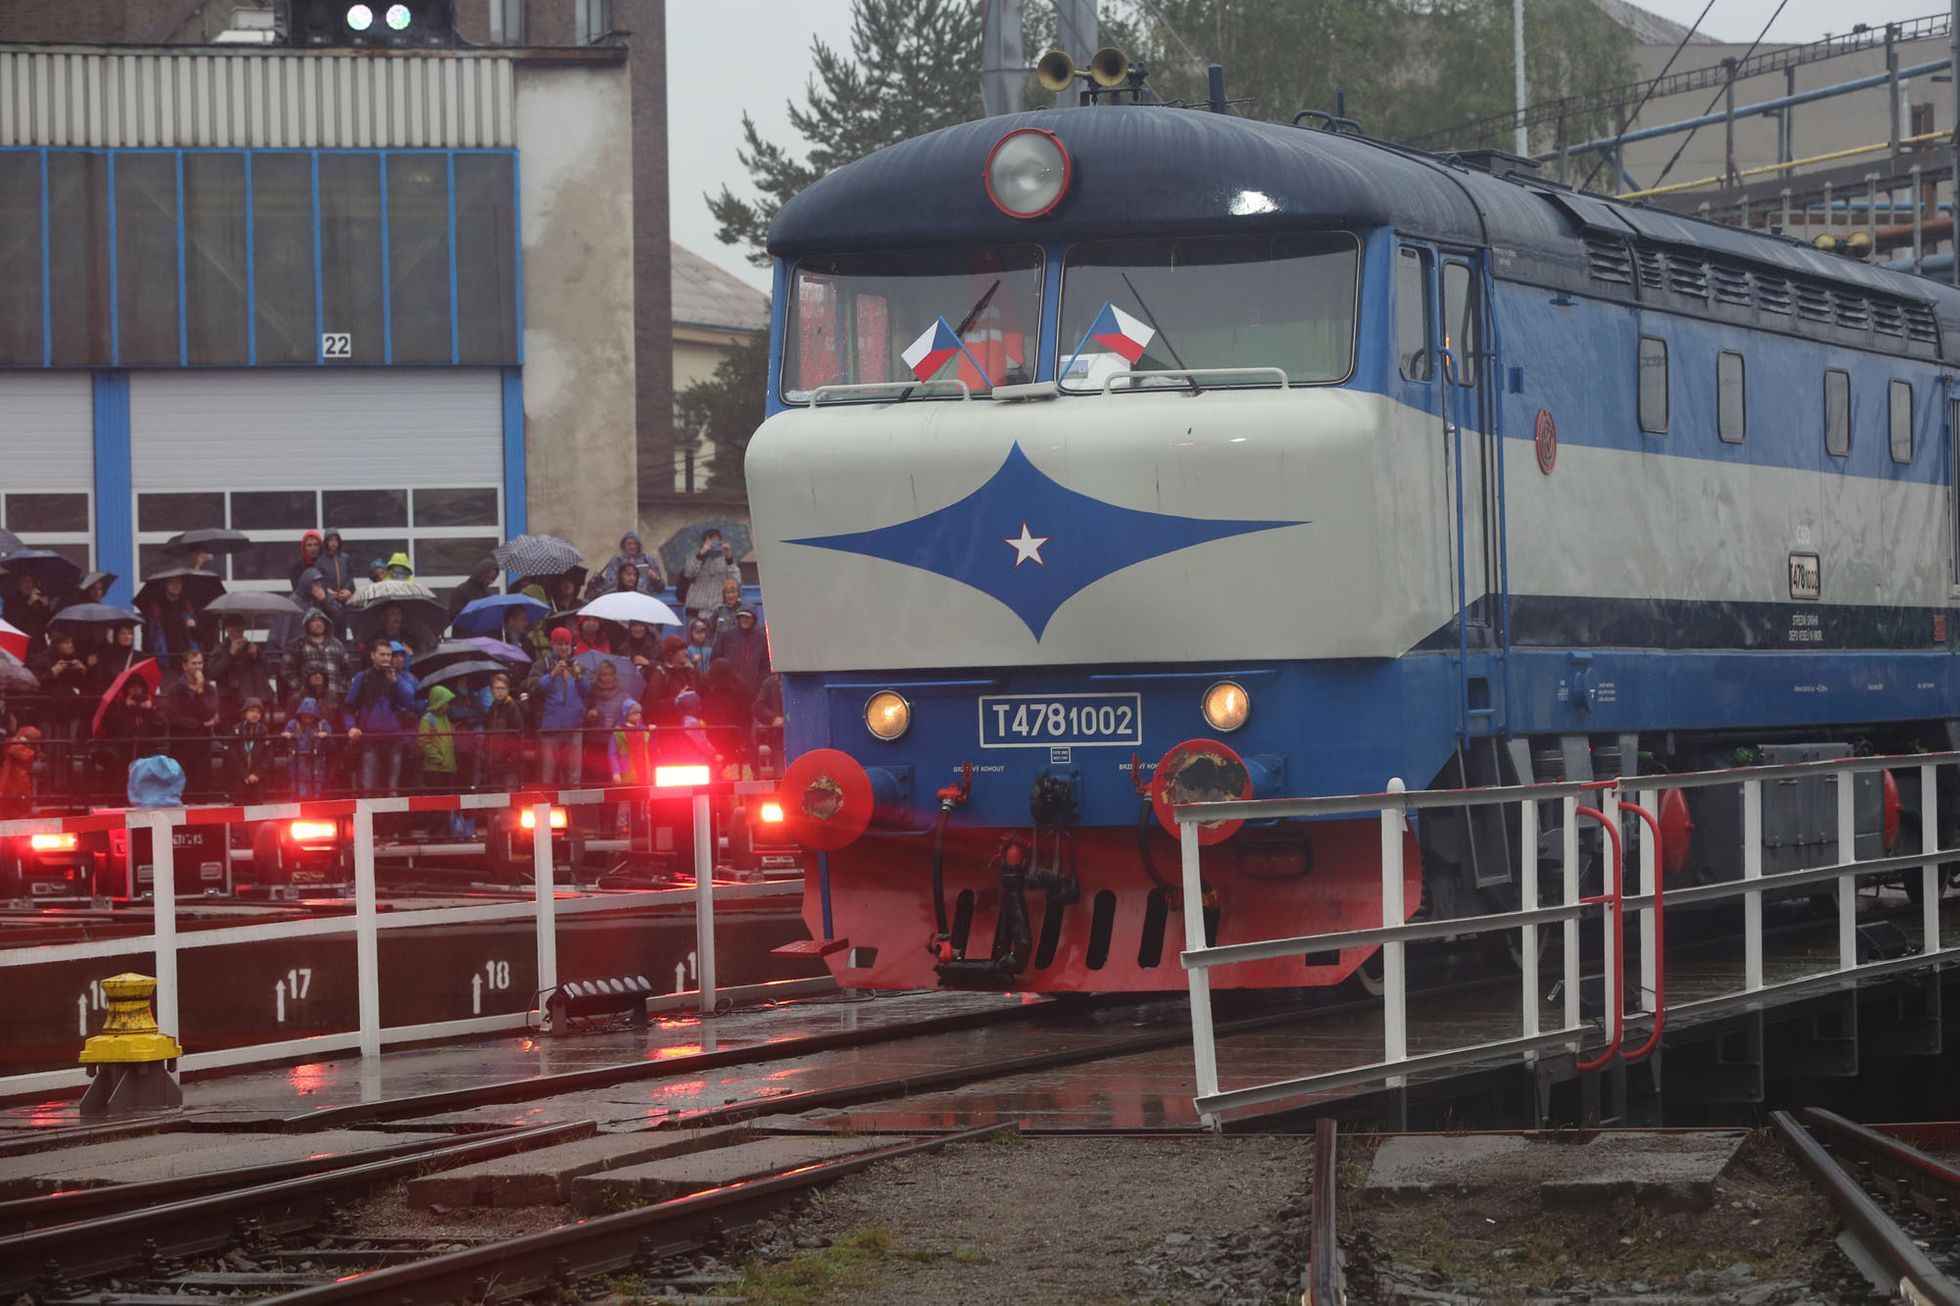 Den železnice v Bohumíně